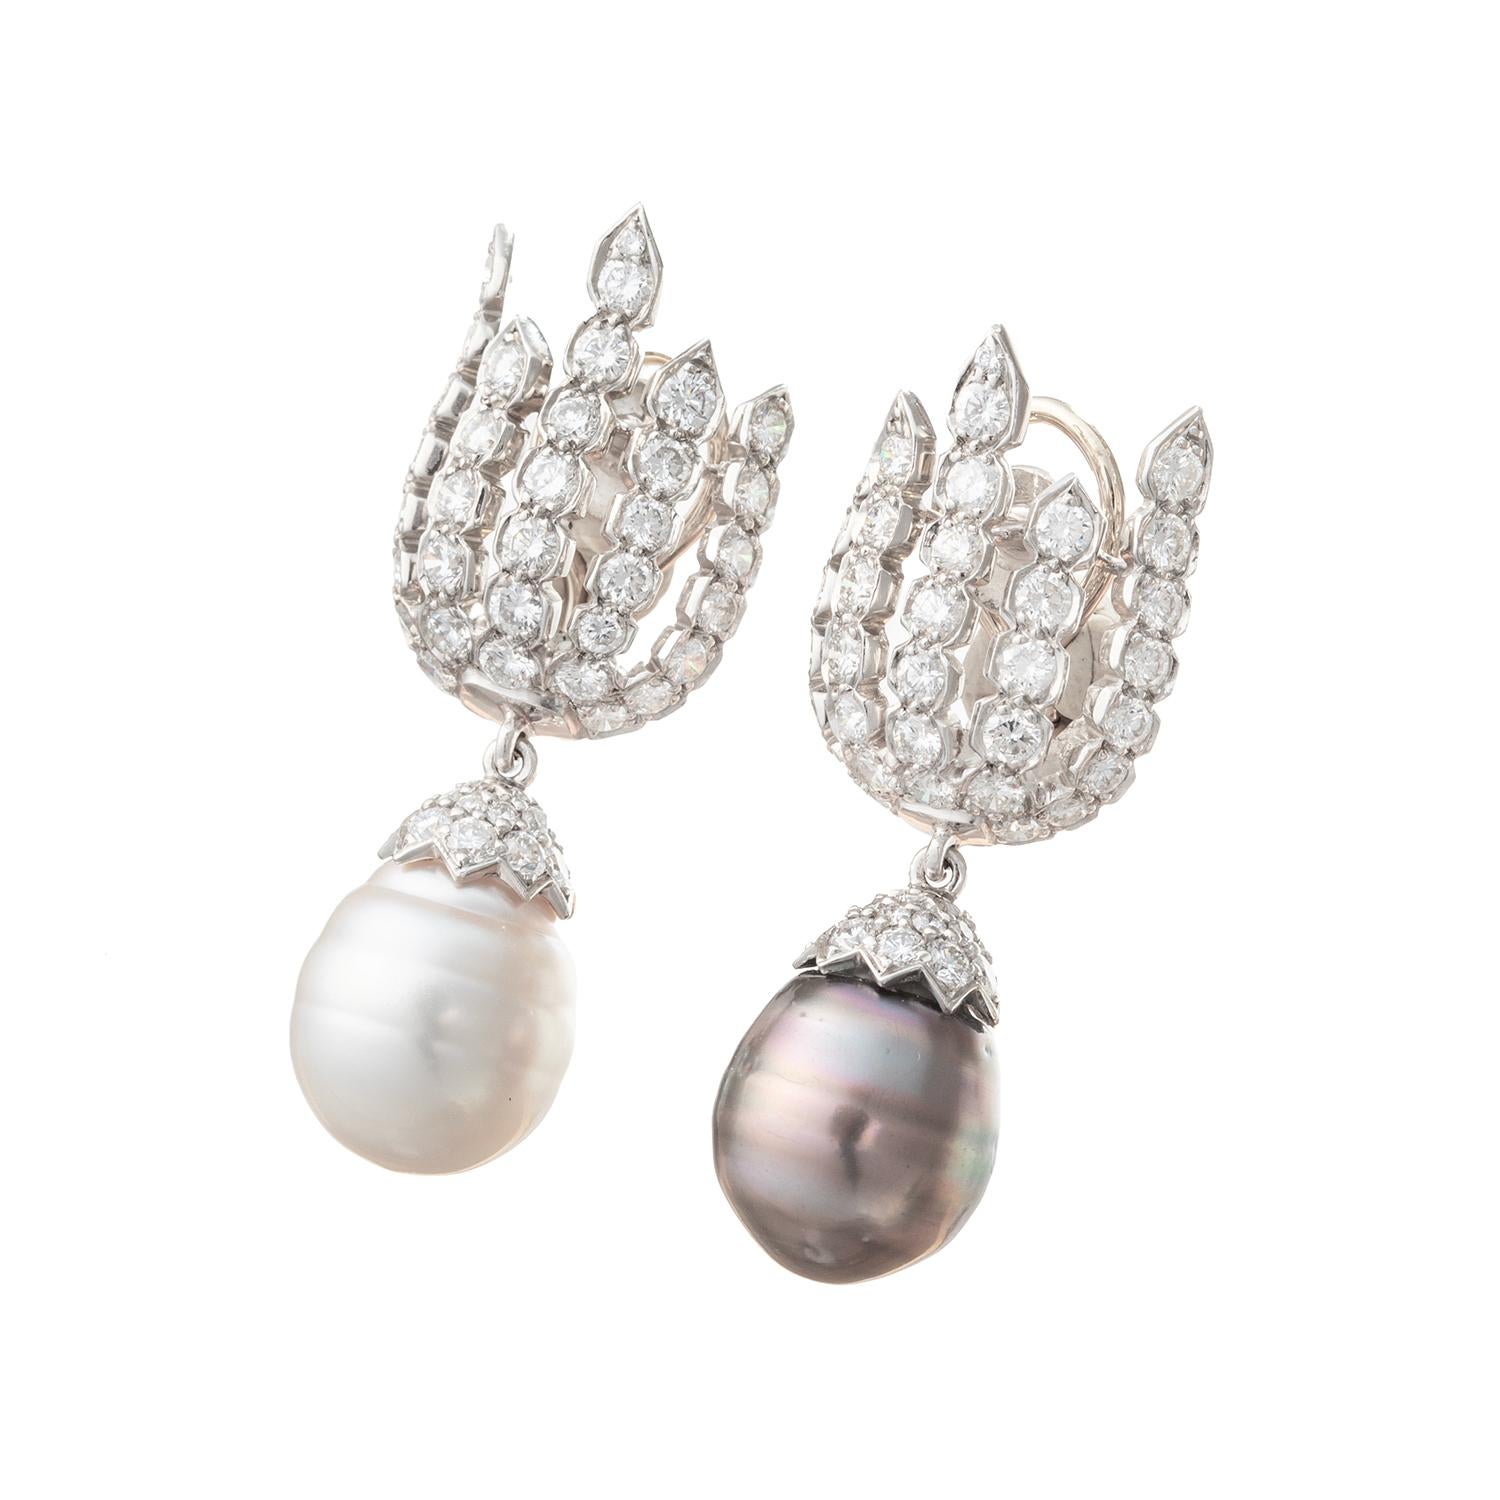 Brilliant Cut Bvcciari Multicolored Pearl Diamond Pendant Earrings For Sale